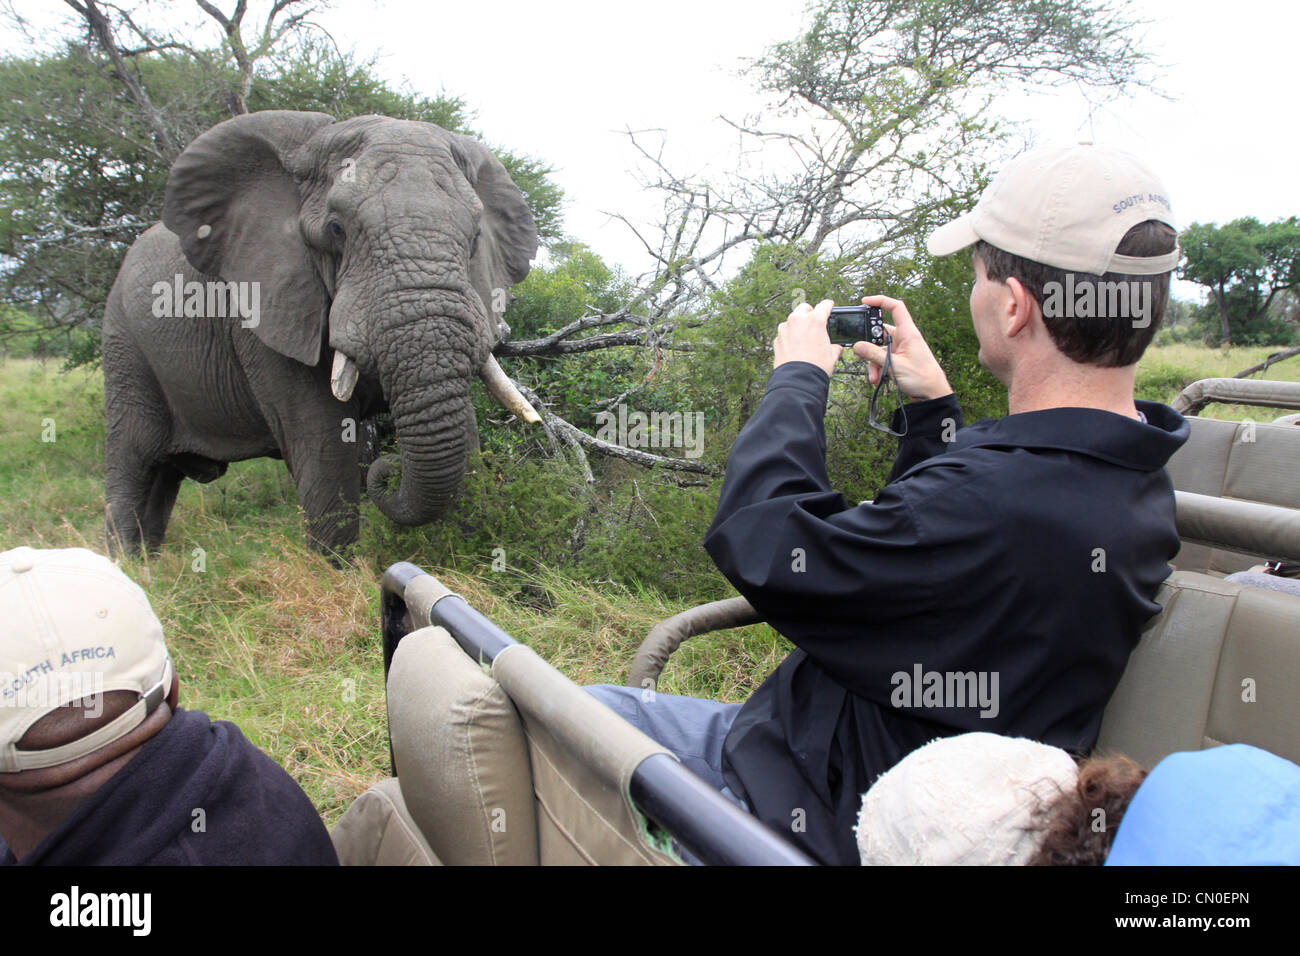 Un éléphant ressemble à l'appareil photo alors qu'un touriste prend une photo de lui. Les Lions des sables bitumineux, Kruger NP, Afrique du Sud. Banque D'Images